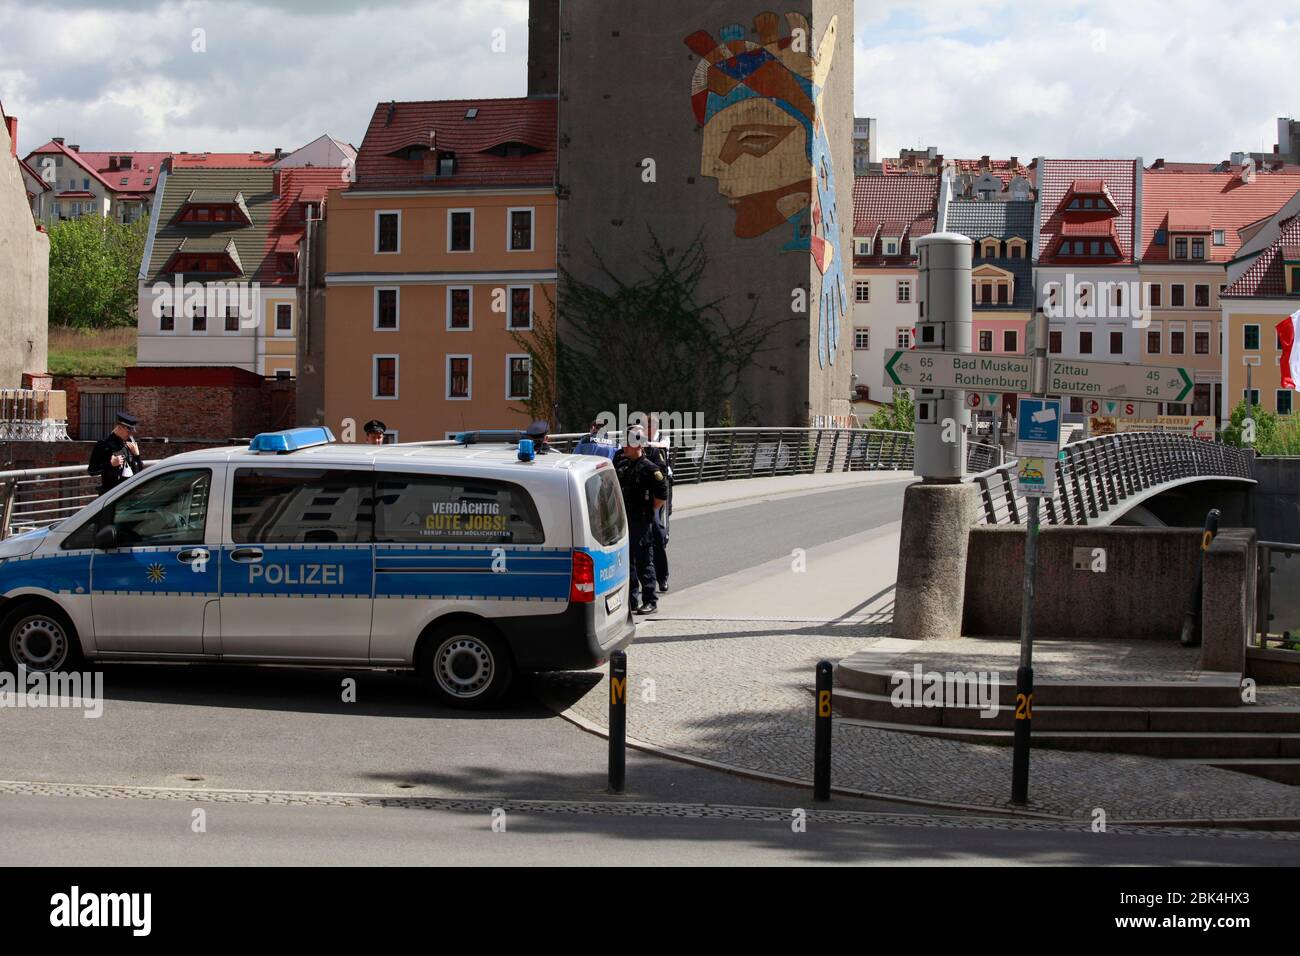 Weggen der anberaumten veranstaltungen wurde die Altstadtbrücke von Görlitz nach Zgorzelec durch die Polizei gesperrt.Görlitz 01.05.2020 Foto Stock